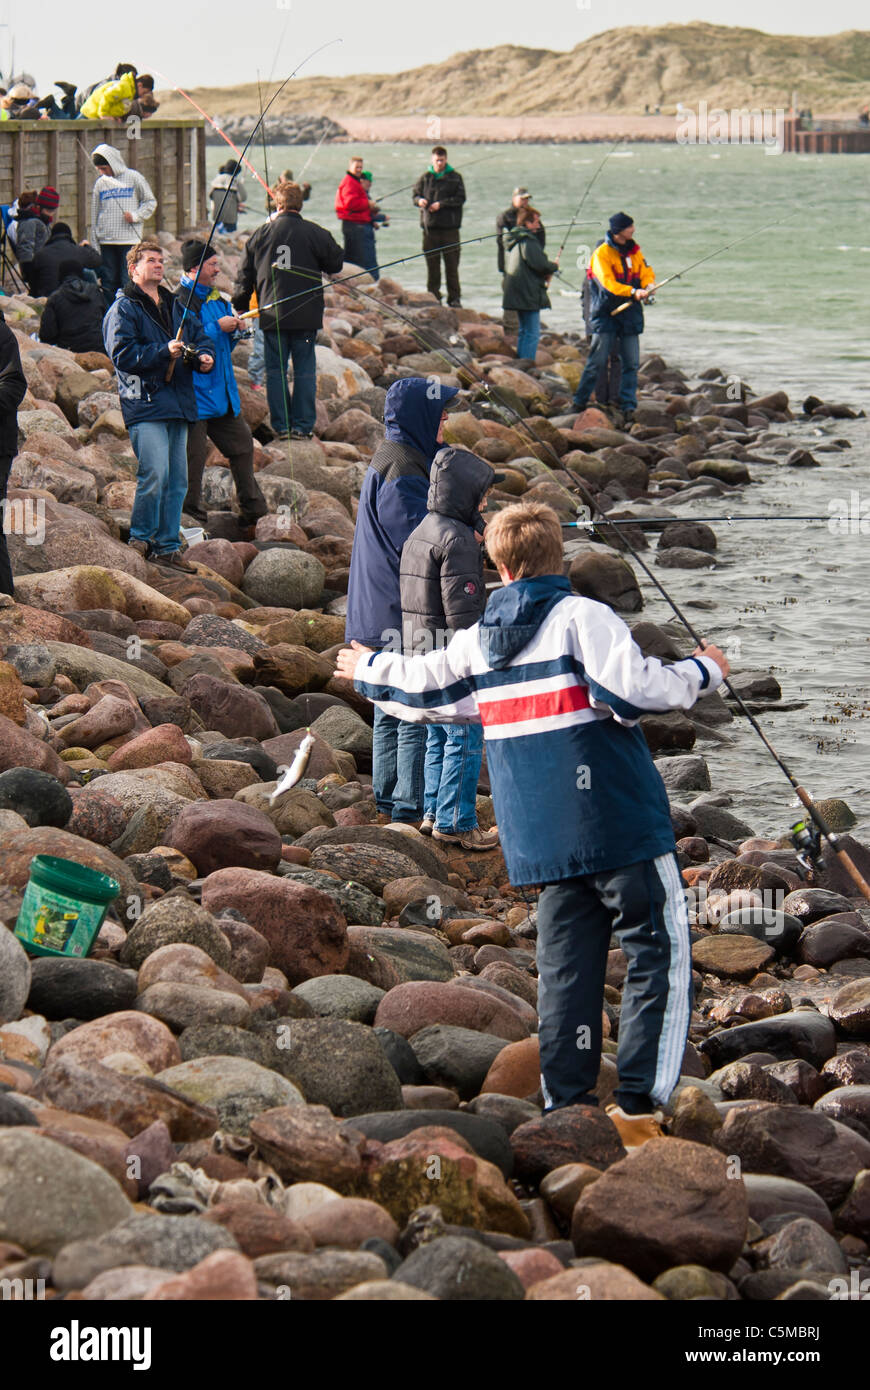 Angler in the port of Hvide Sande, Jutland, Denmark Stock Photo